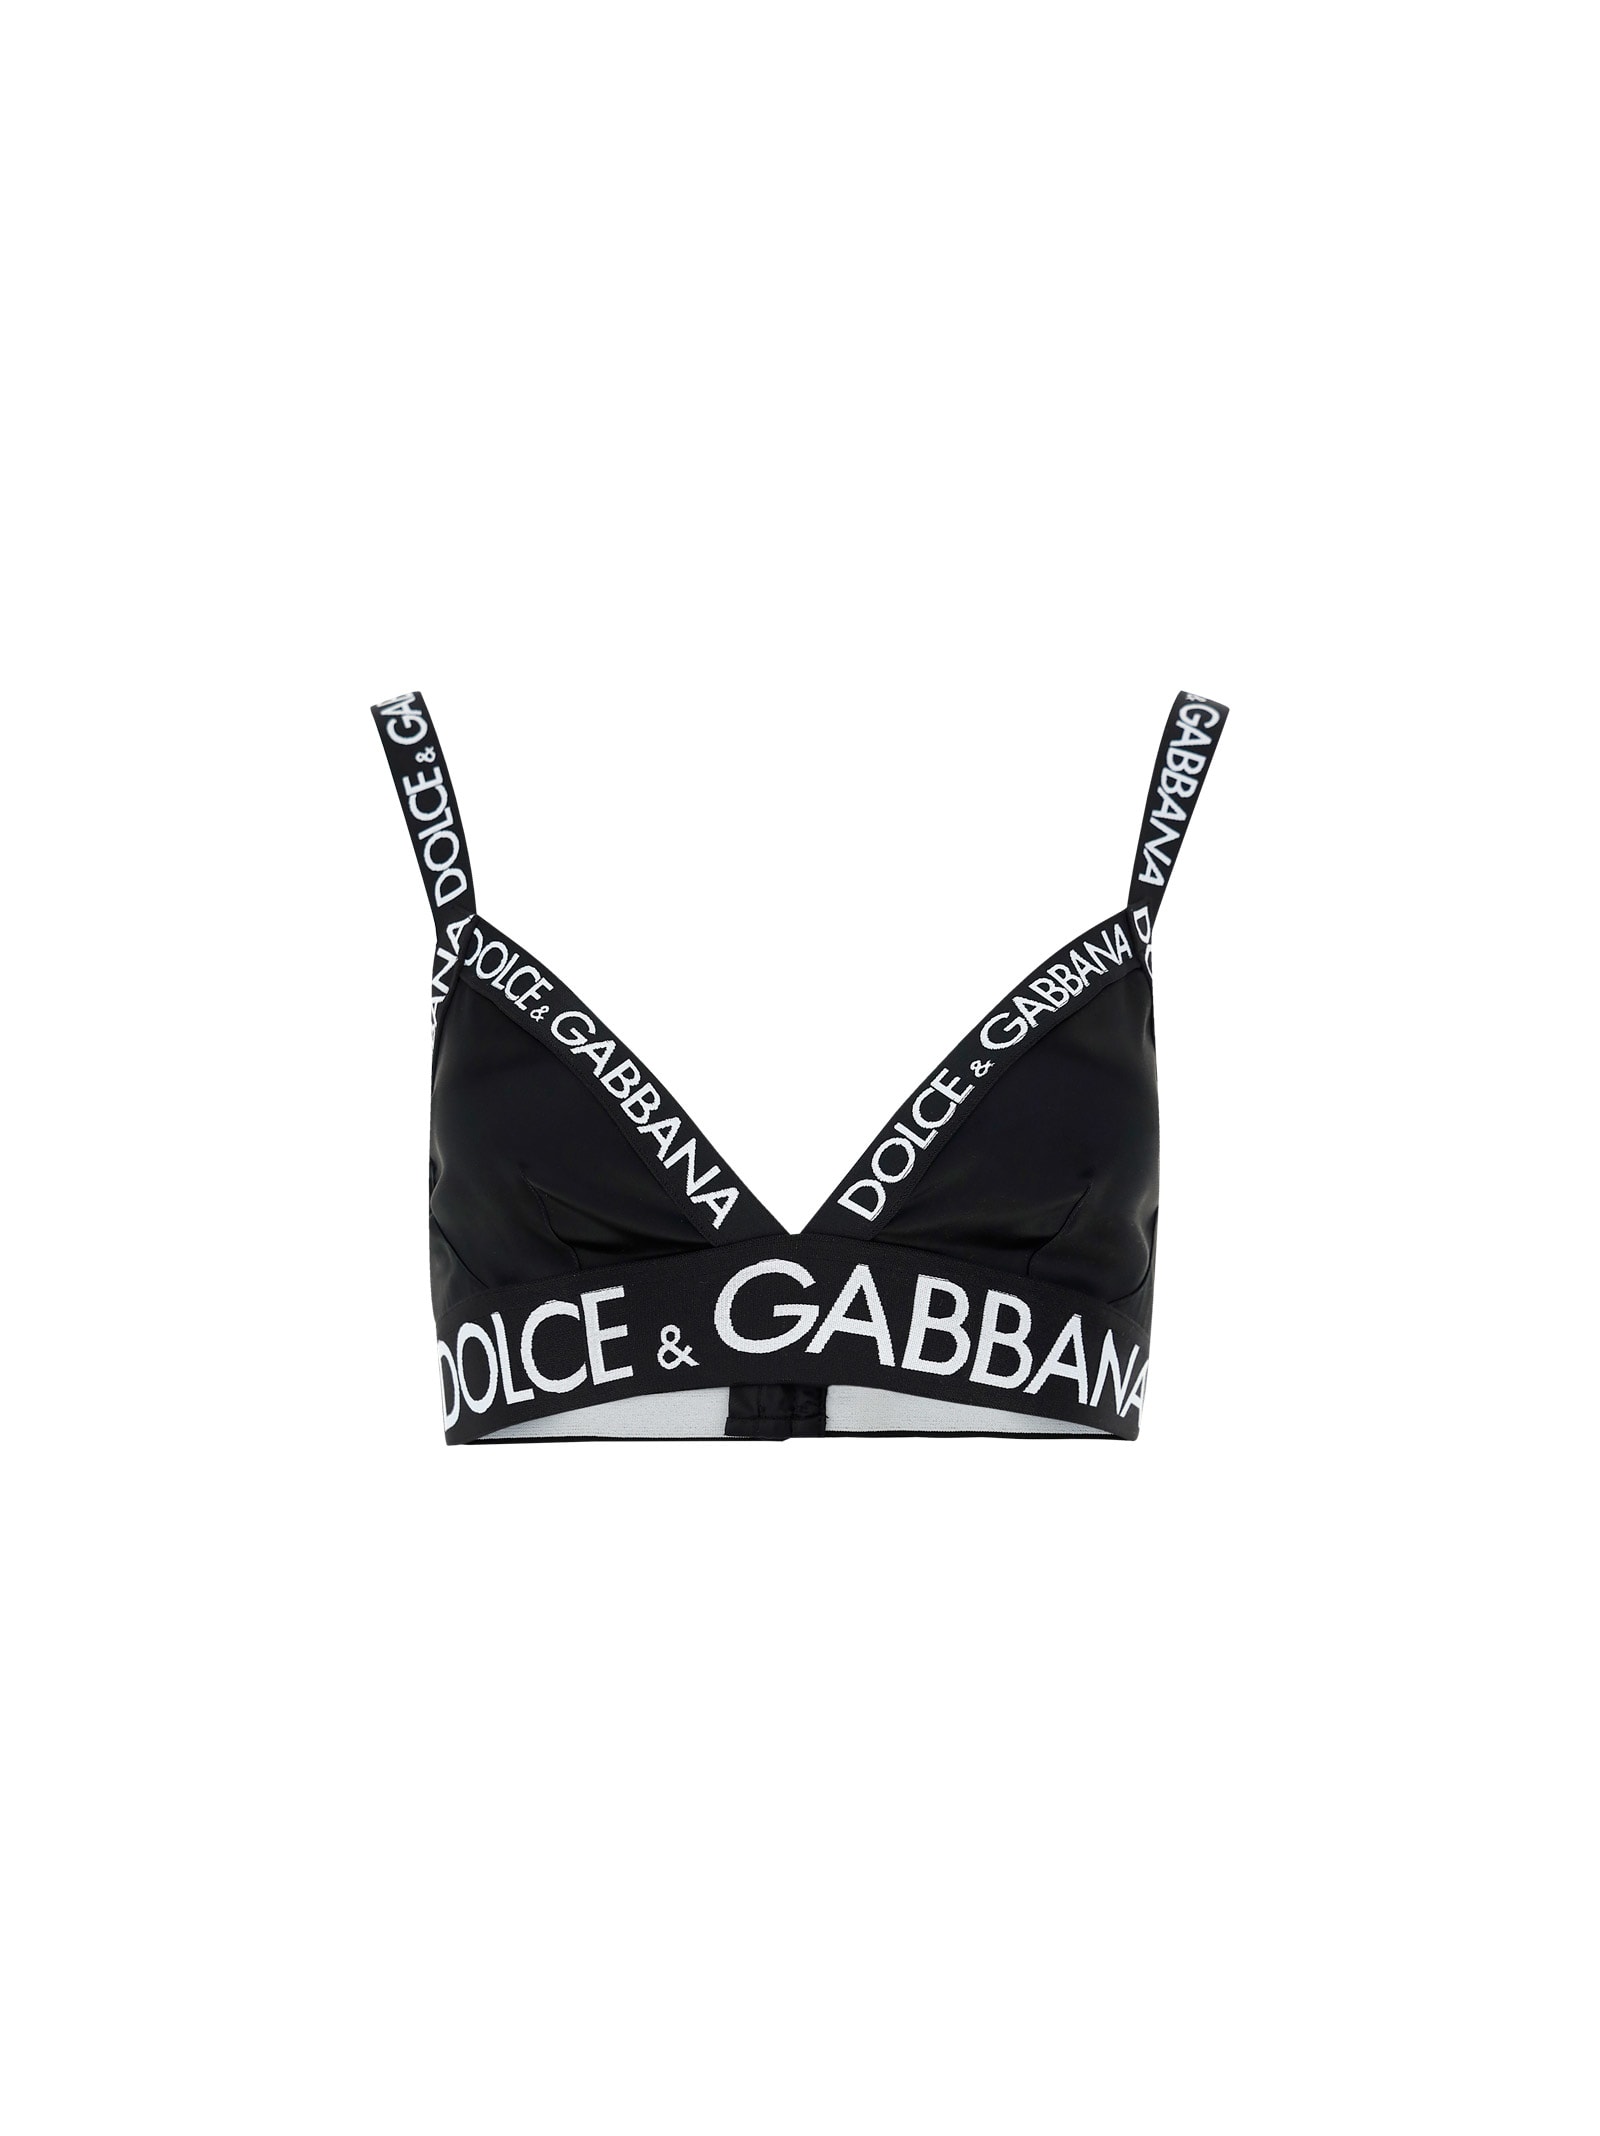 Dolce & Gabbana Bra